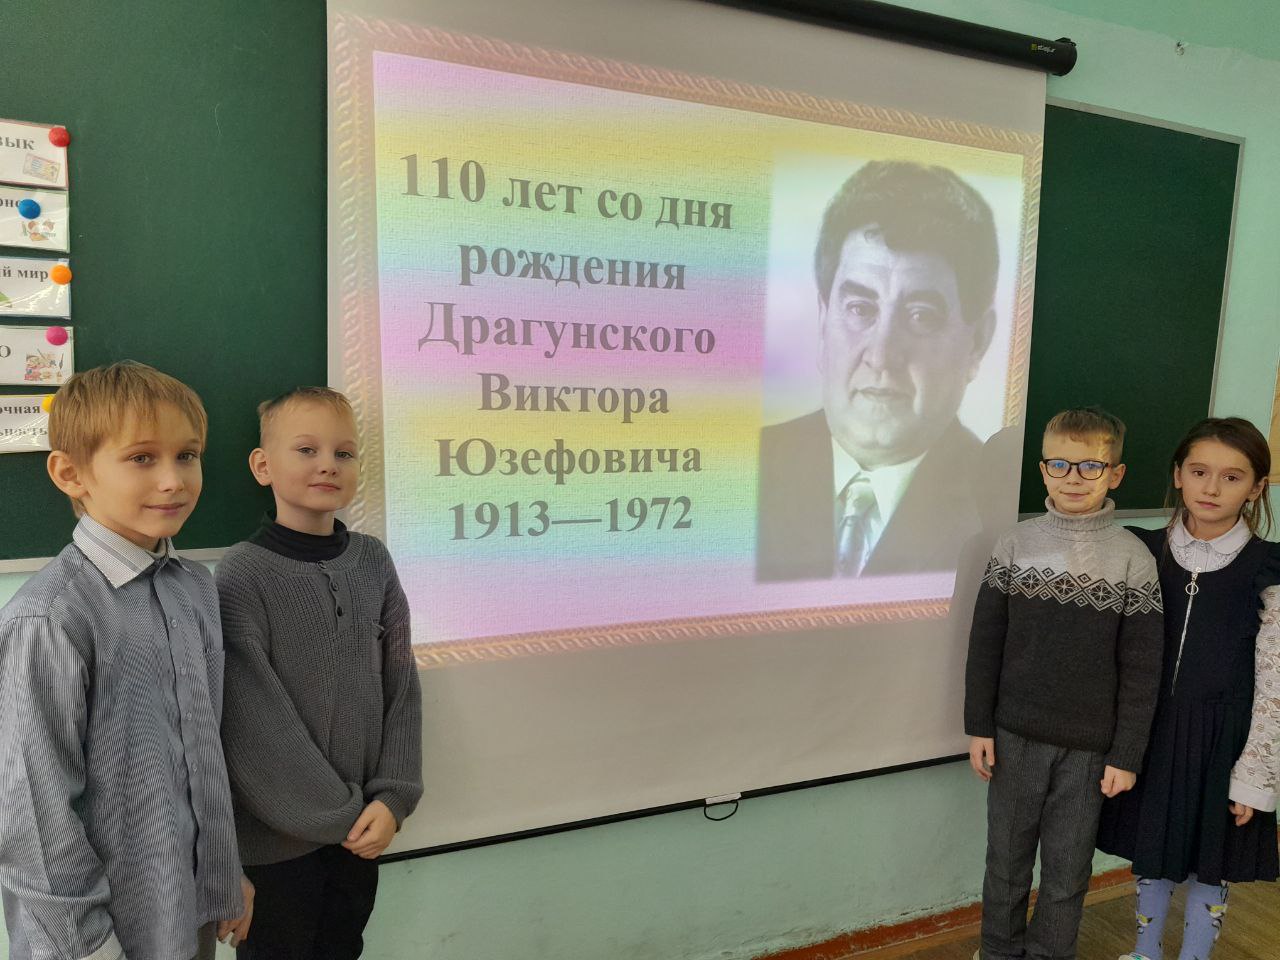 110 лет со дня рождения Виктора Драгунского.